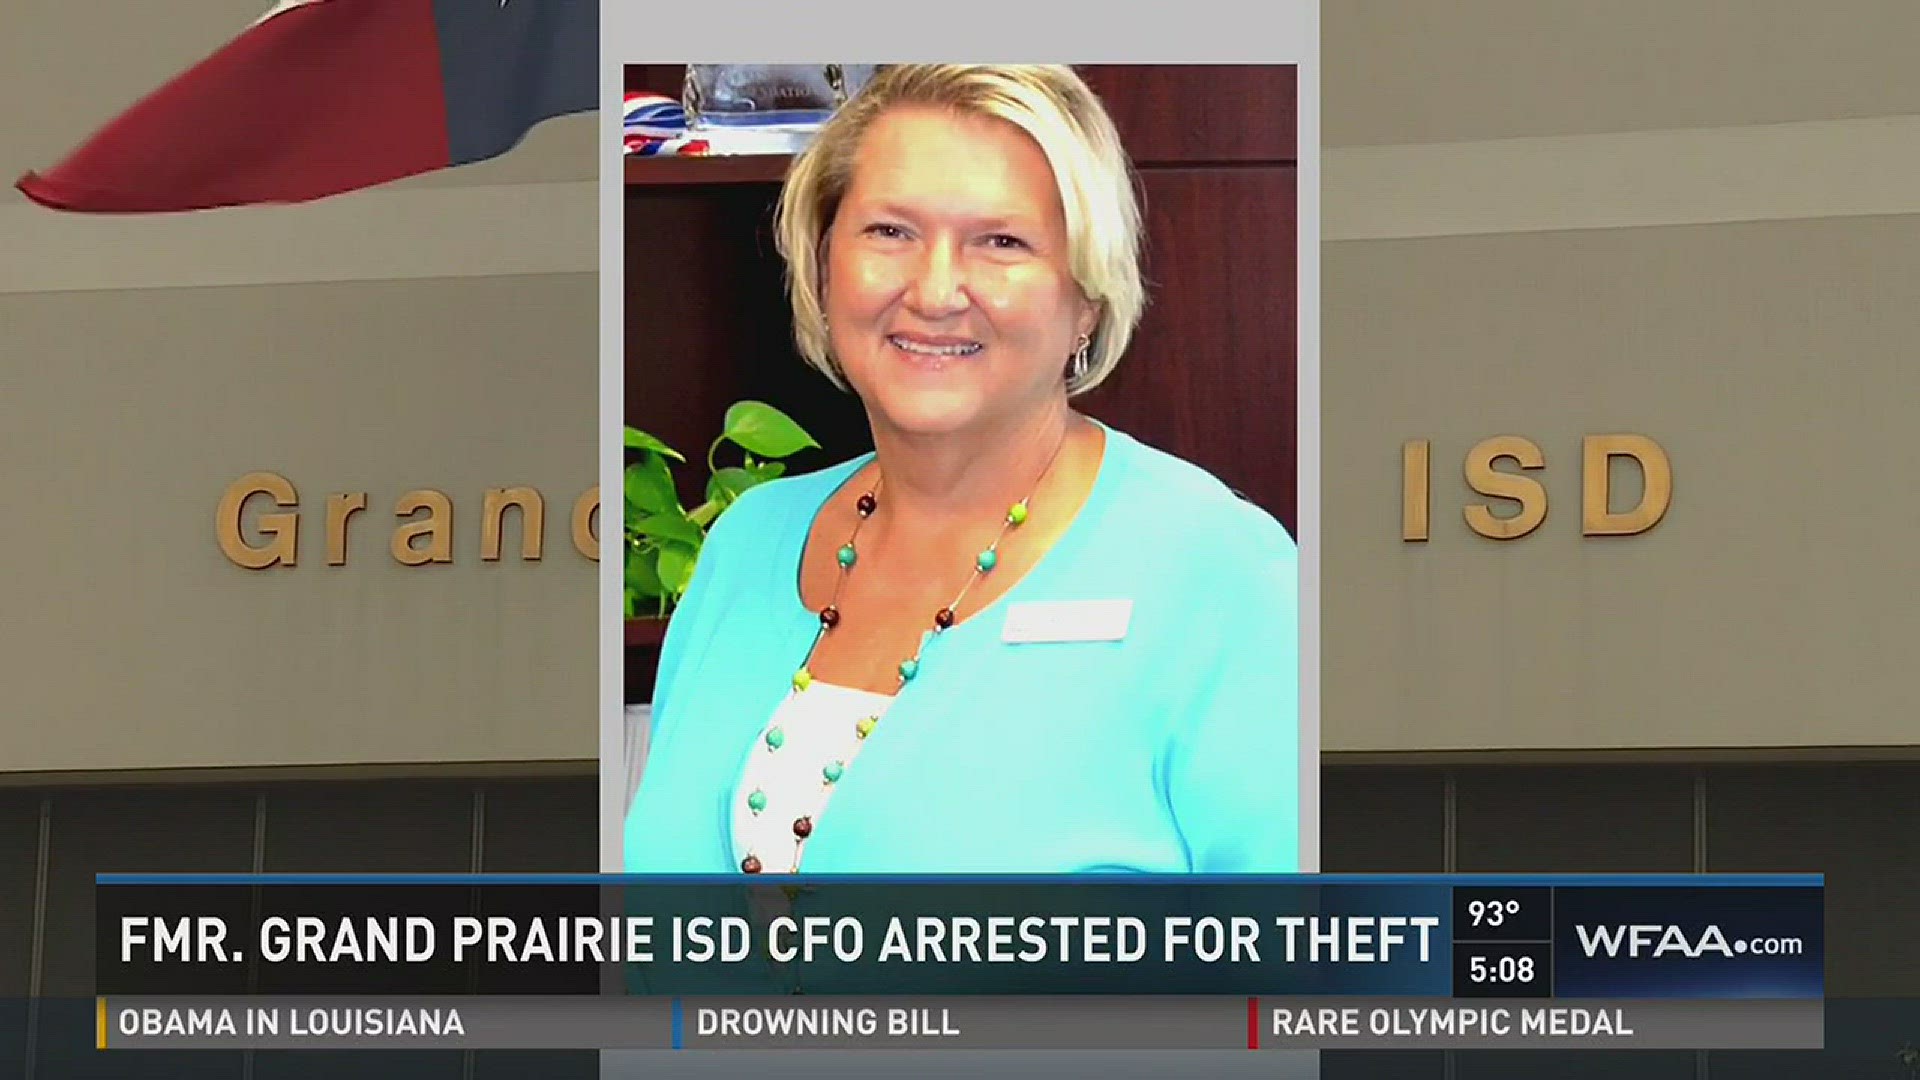 Former Grand Prairie ISD CFO arrested for theft